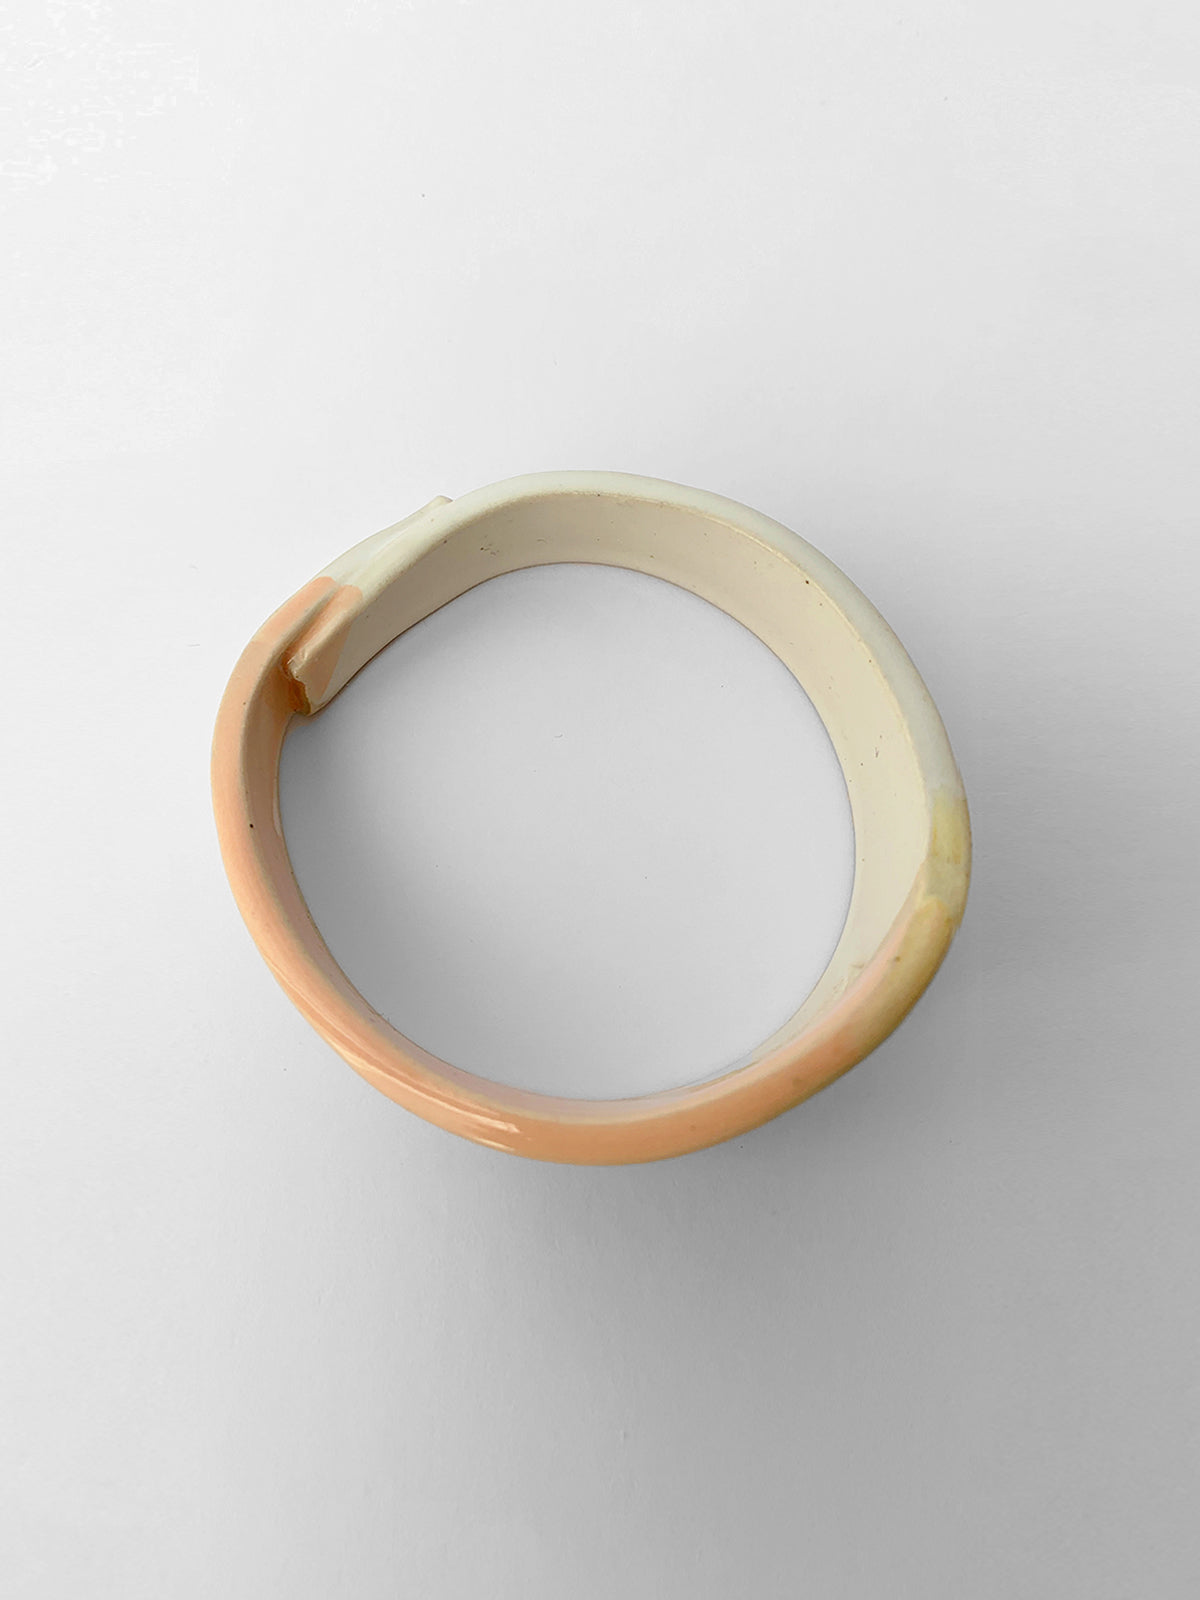 GAMILA ceramic cuff bracelet